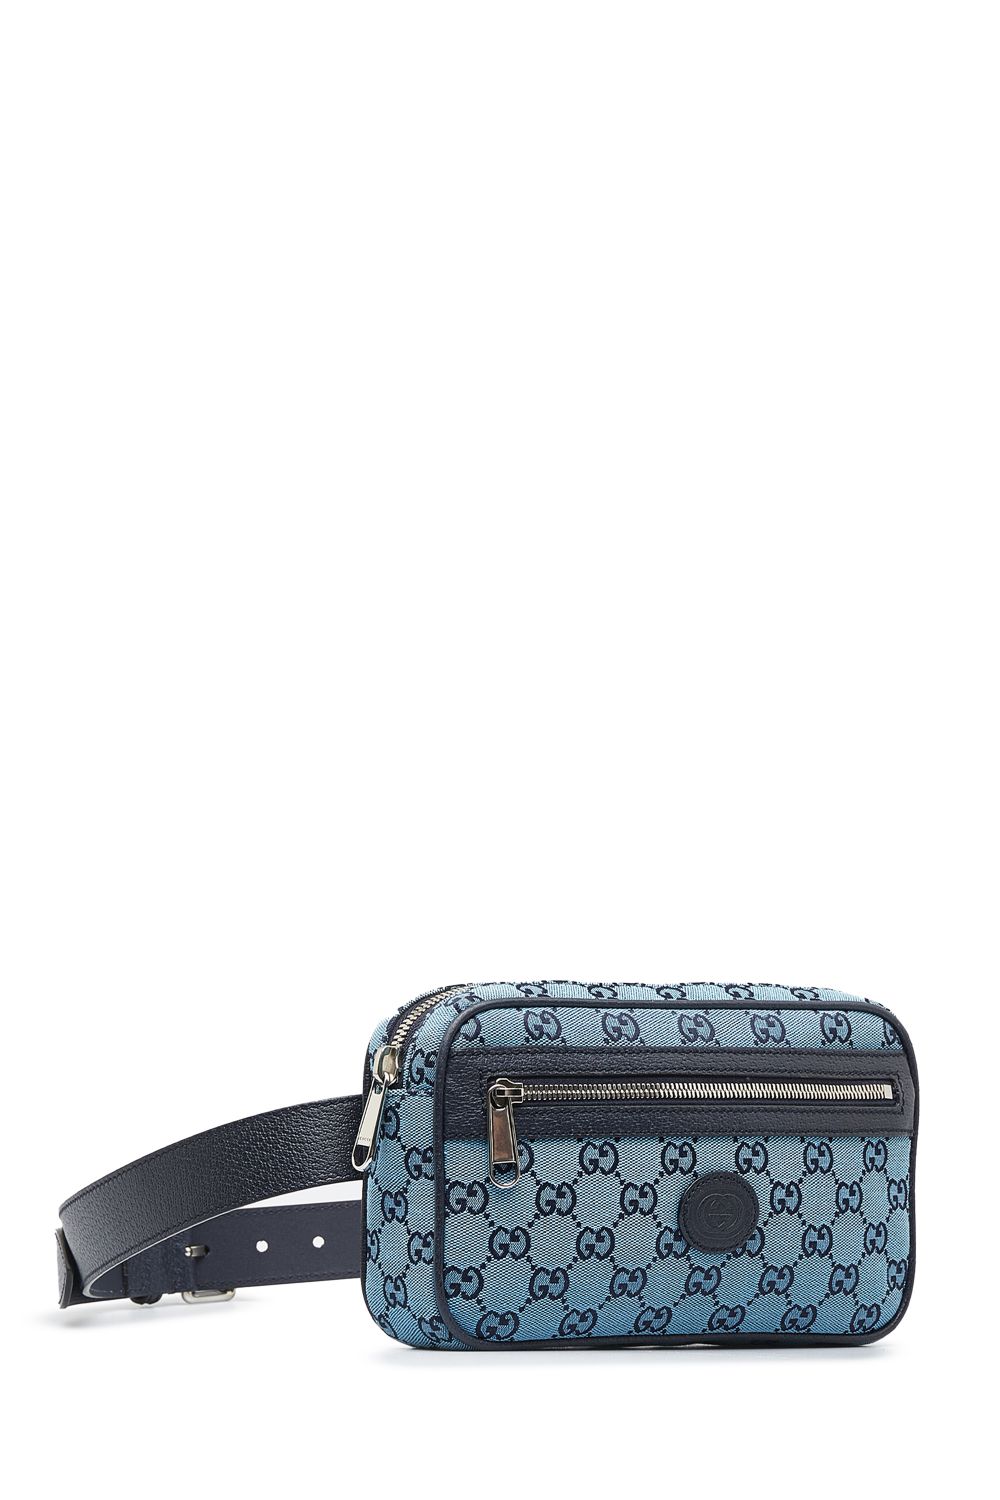 Gucci Pre-Owned Gucci GG Multicolor Belt Bag - BLACK